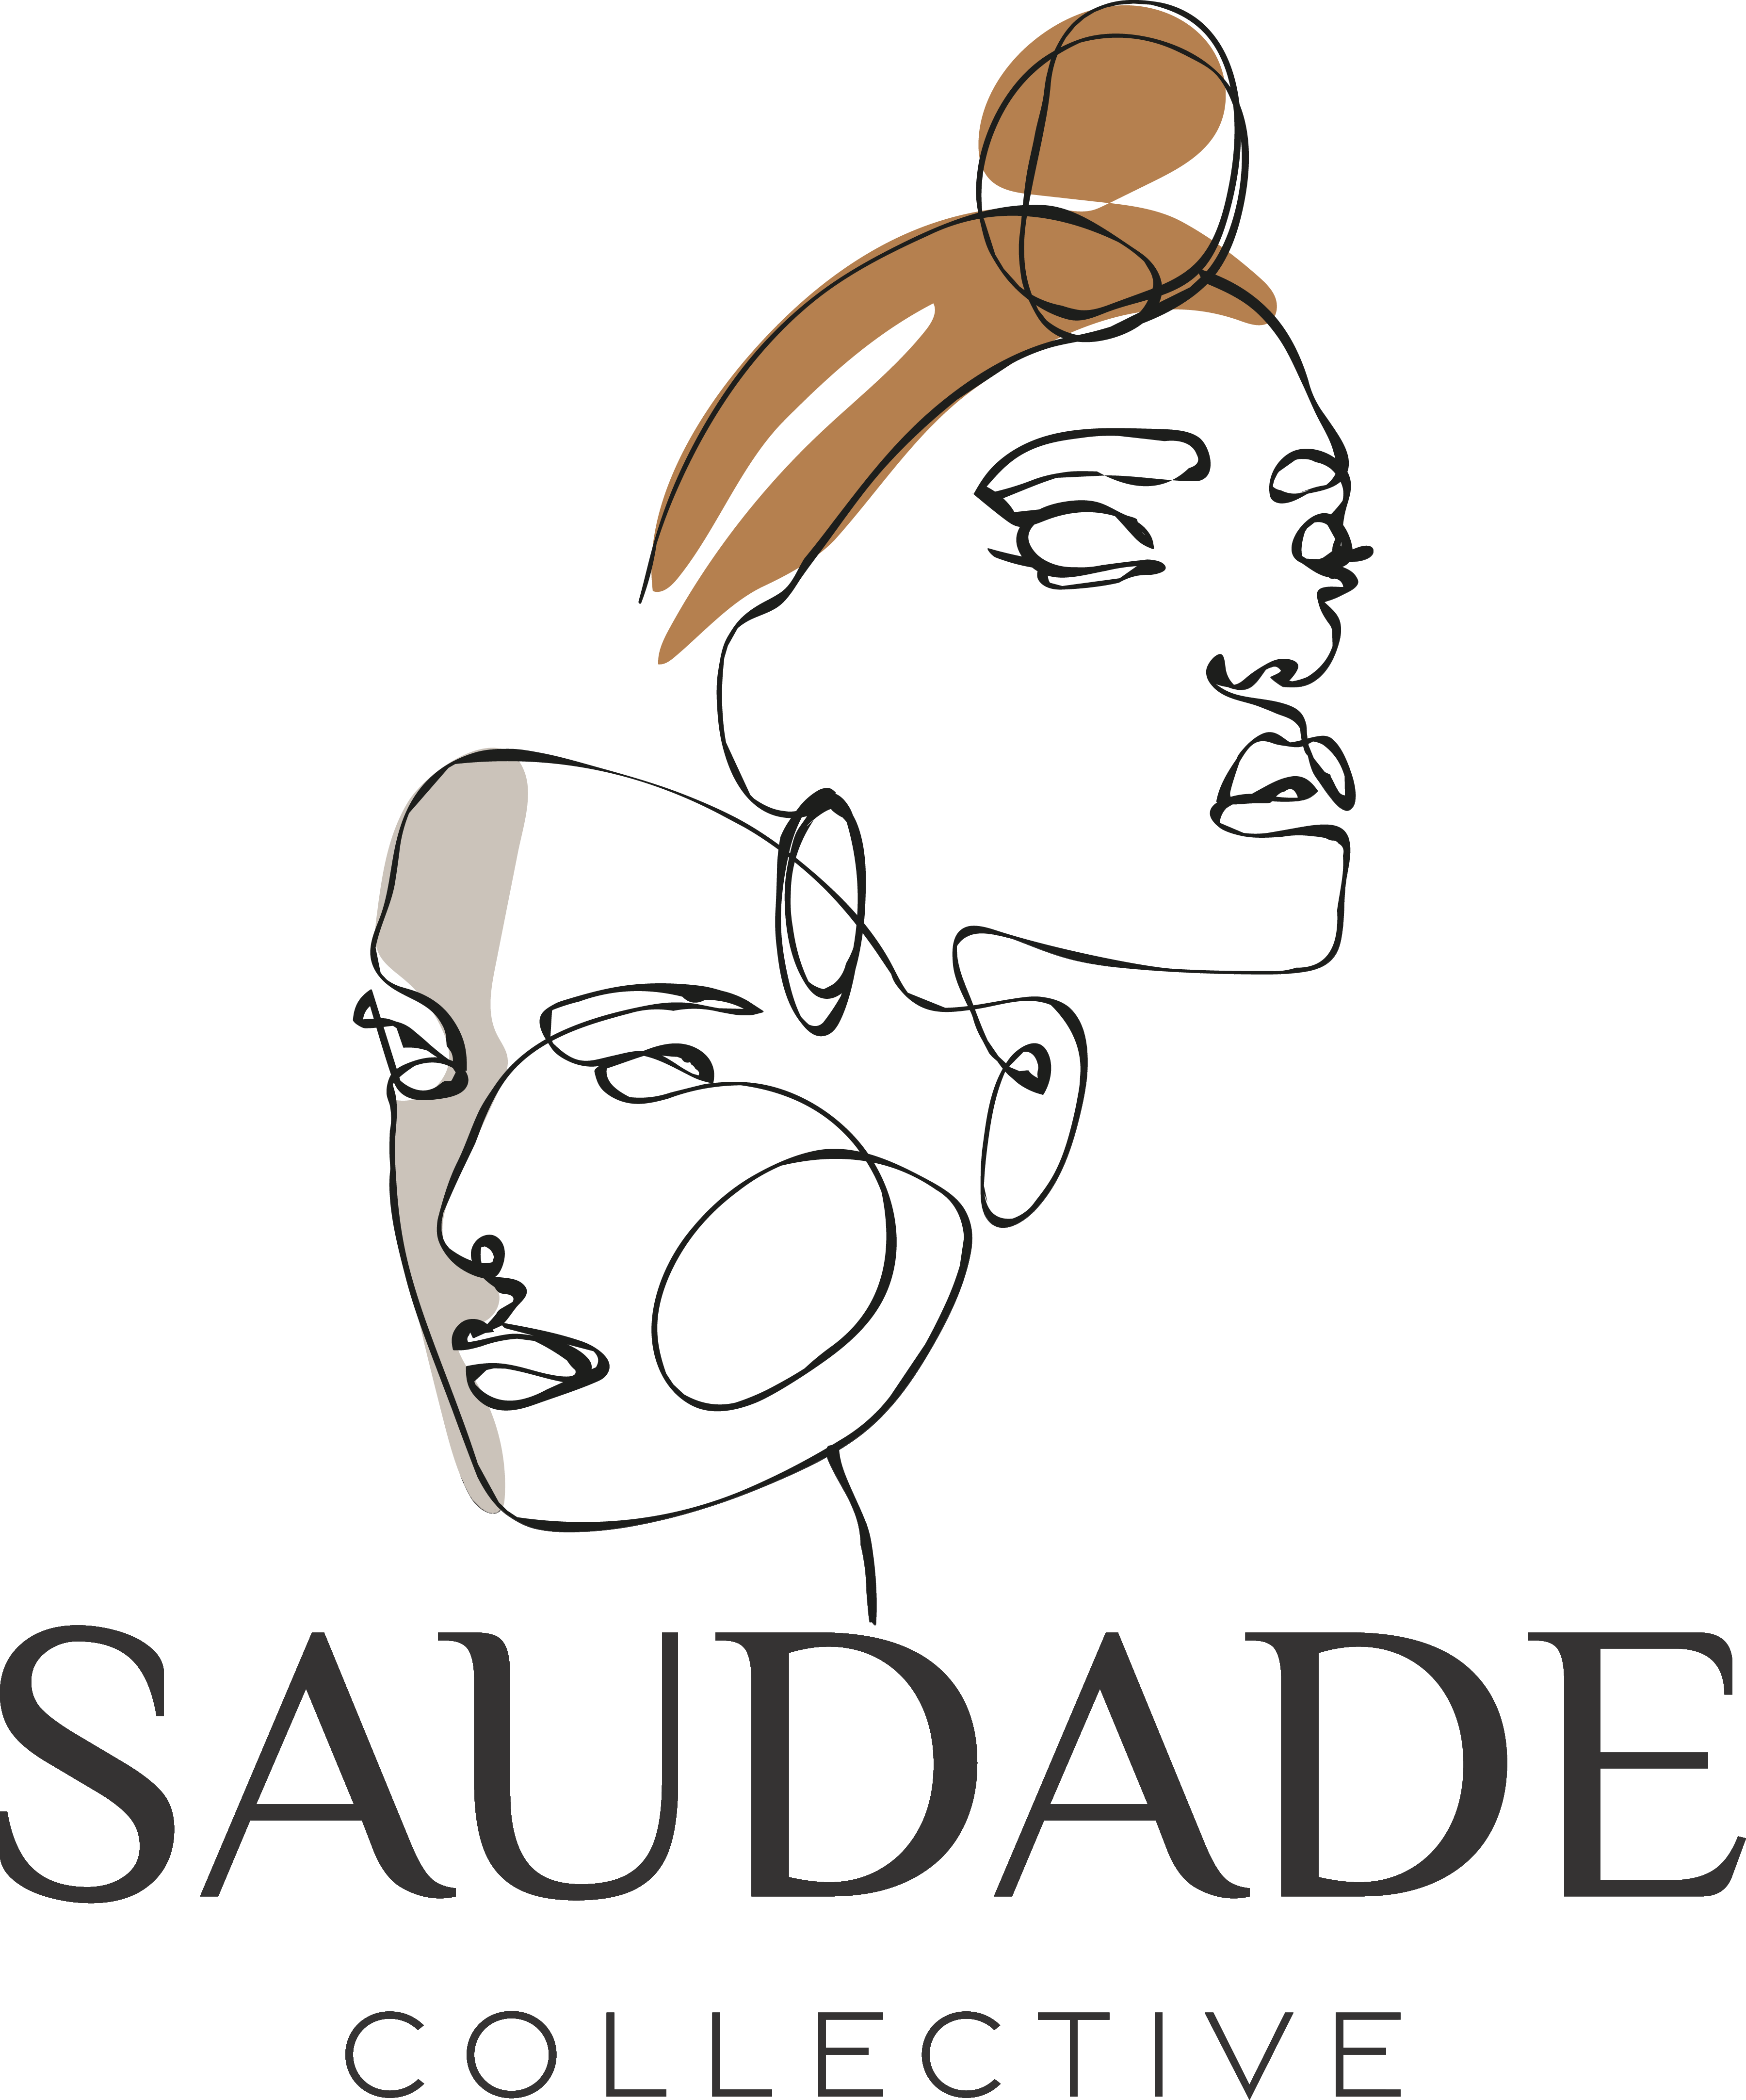 #saudade #saudadecollective #saudade_collective #collective #craftsmanship